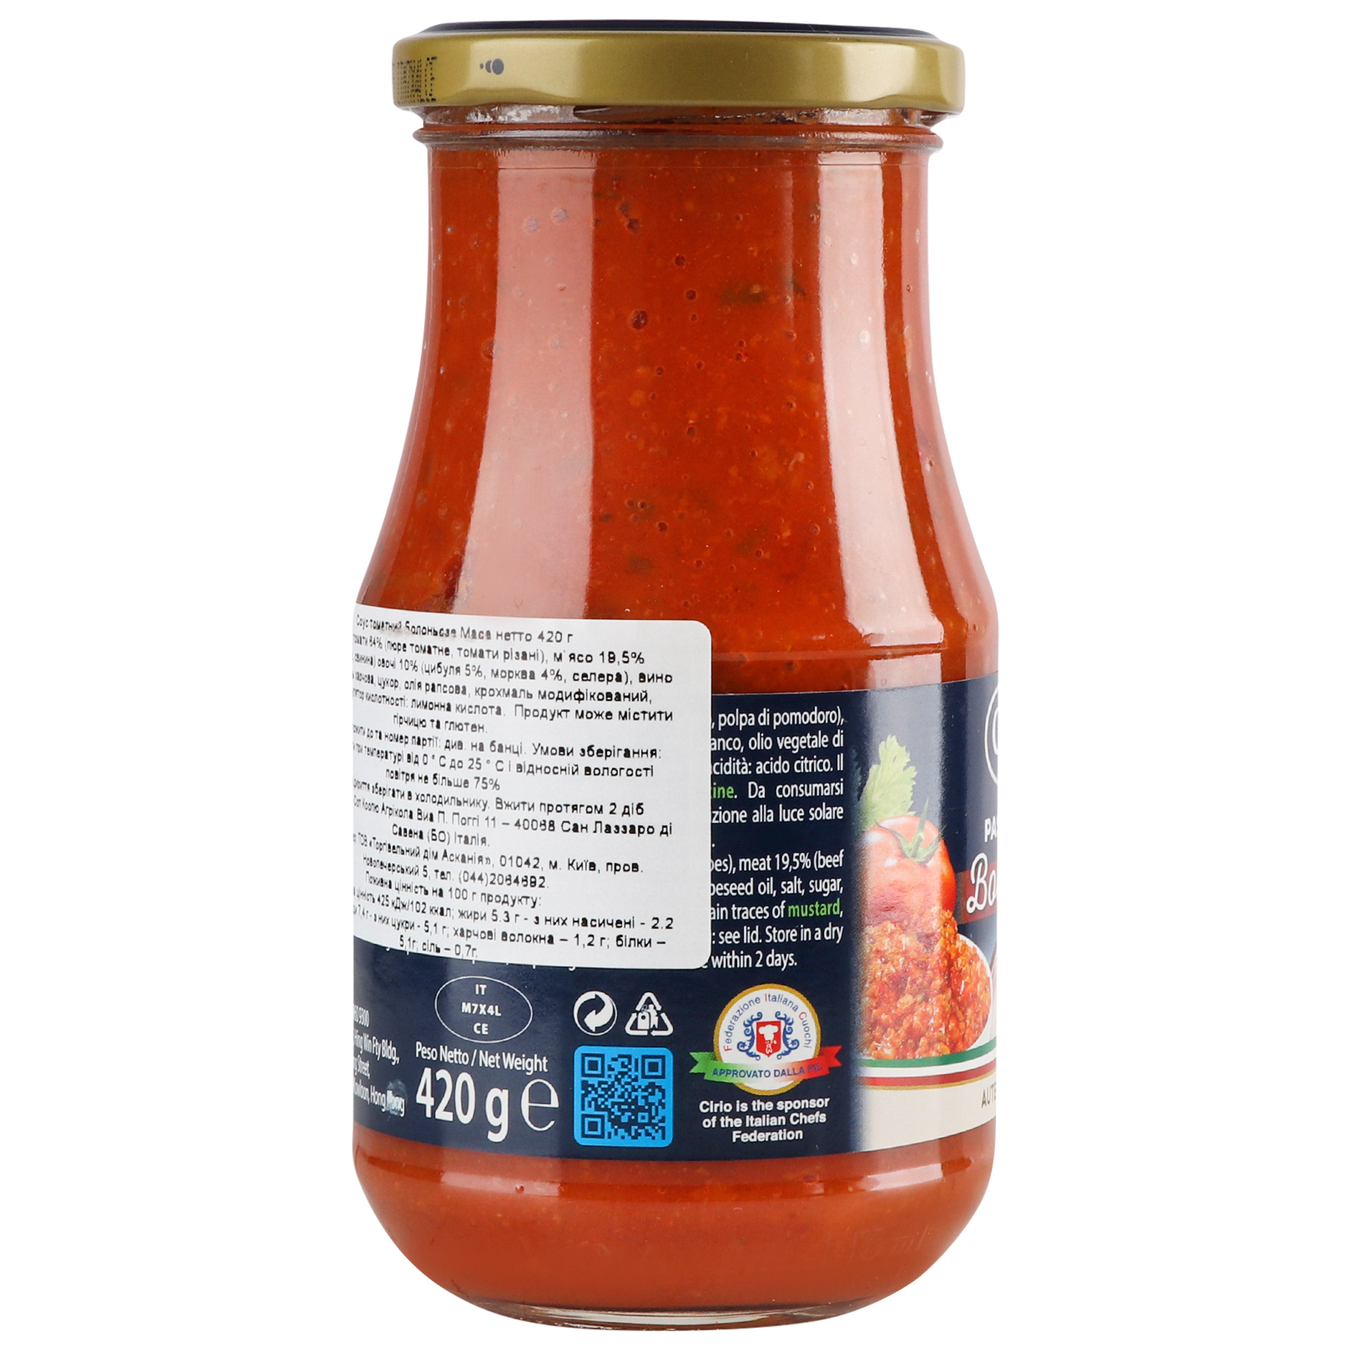 Cirio Bolognese tomato sauce 420g 4